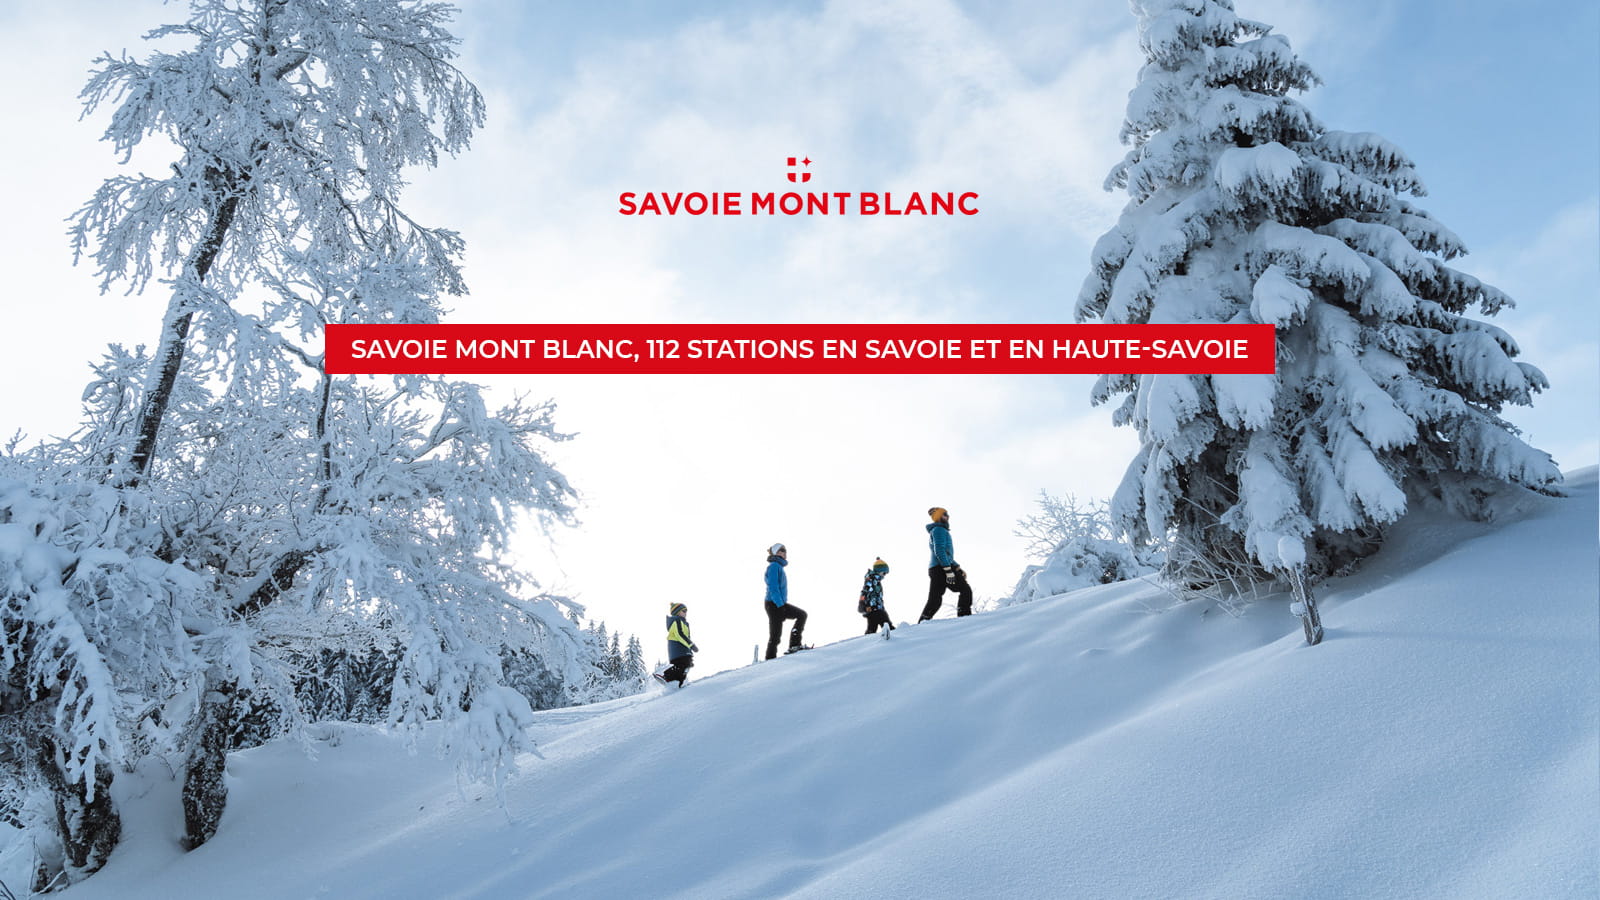 Destinos Savoie Mont Blanc